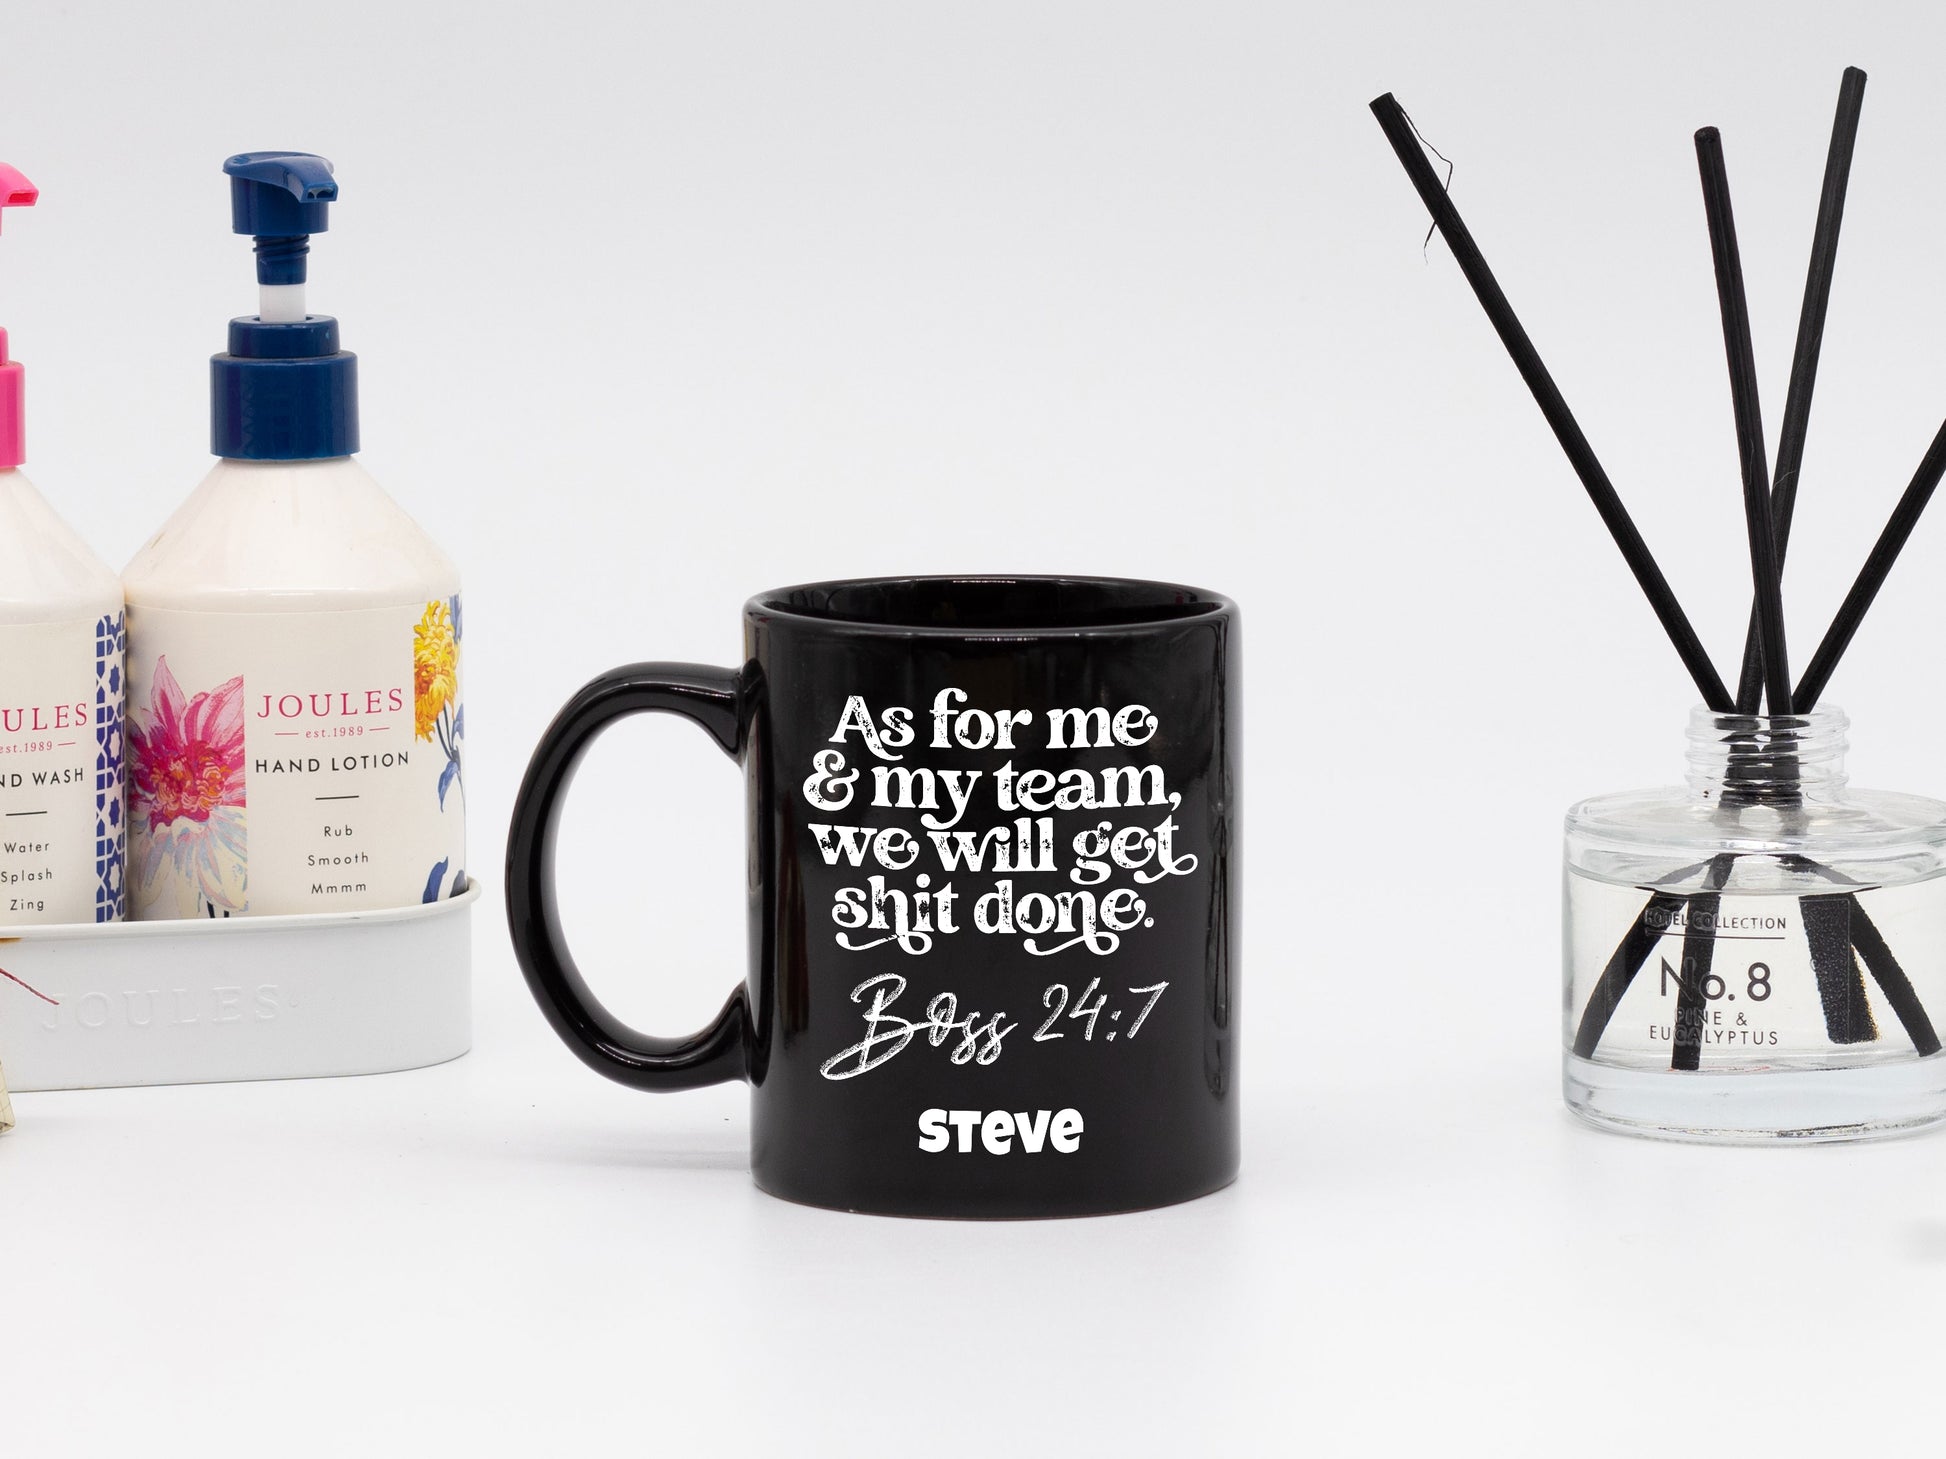 Coffee Mug, Printed Mug, Coffee Cup, Tea Mug, Graphic Mug, Me And My Team - Mug Project